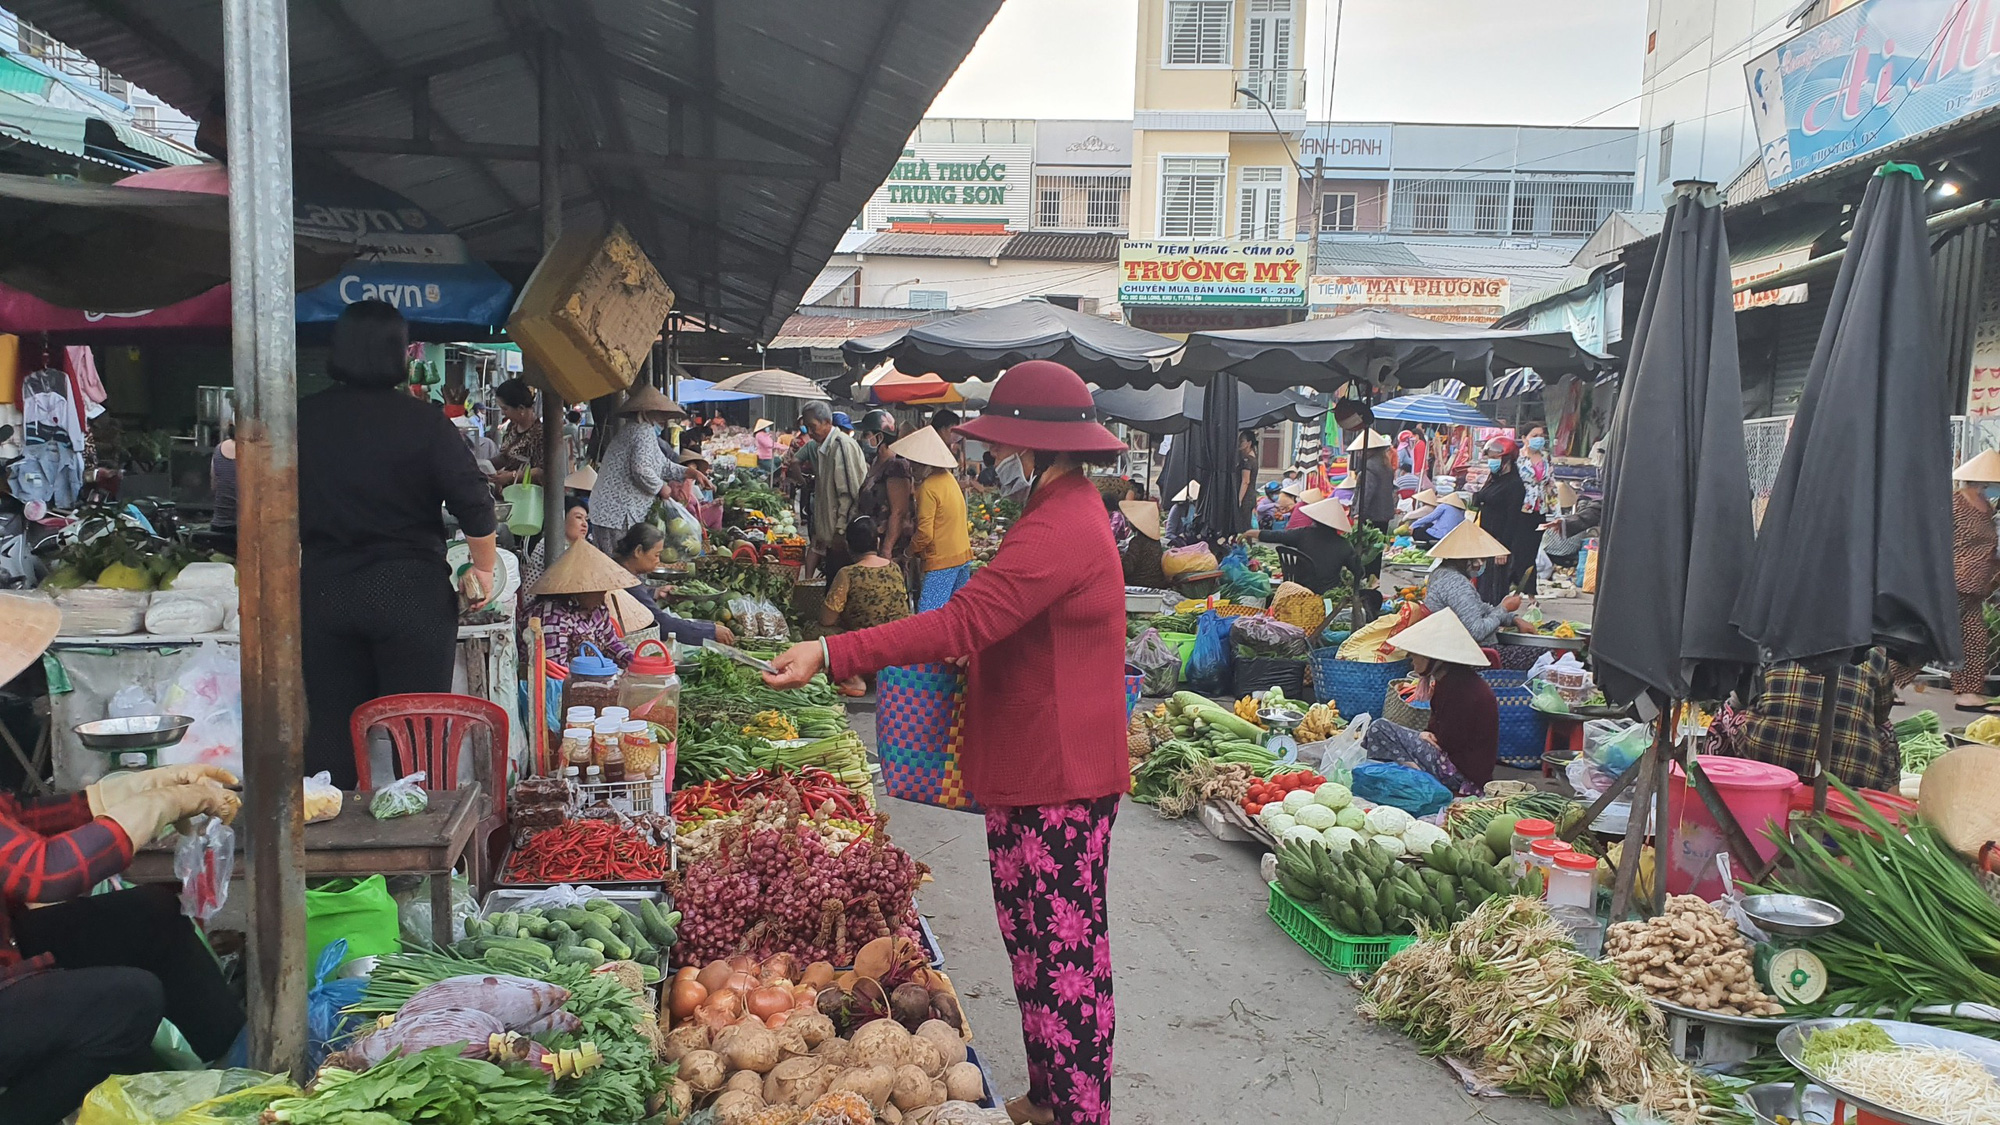 Hãy cùng đến với chợ quê ngày giáp Tết và khám phá nền văn hóa ẩm thực Việt Nam độc đáo. Bạn sẽ có những trải nghiệm thú vị đầy màu sắc và những bức ảnh đẹp không thể bỏ lỡ trong dịp Tết này.